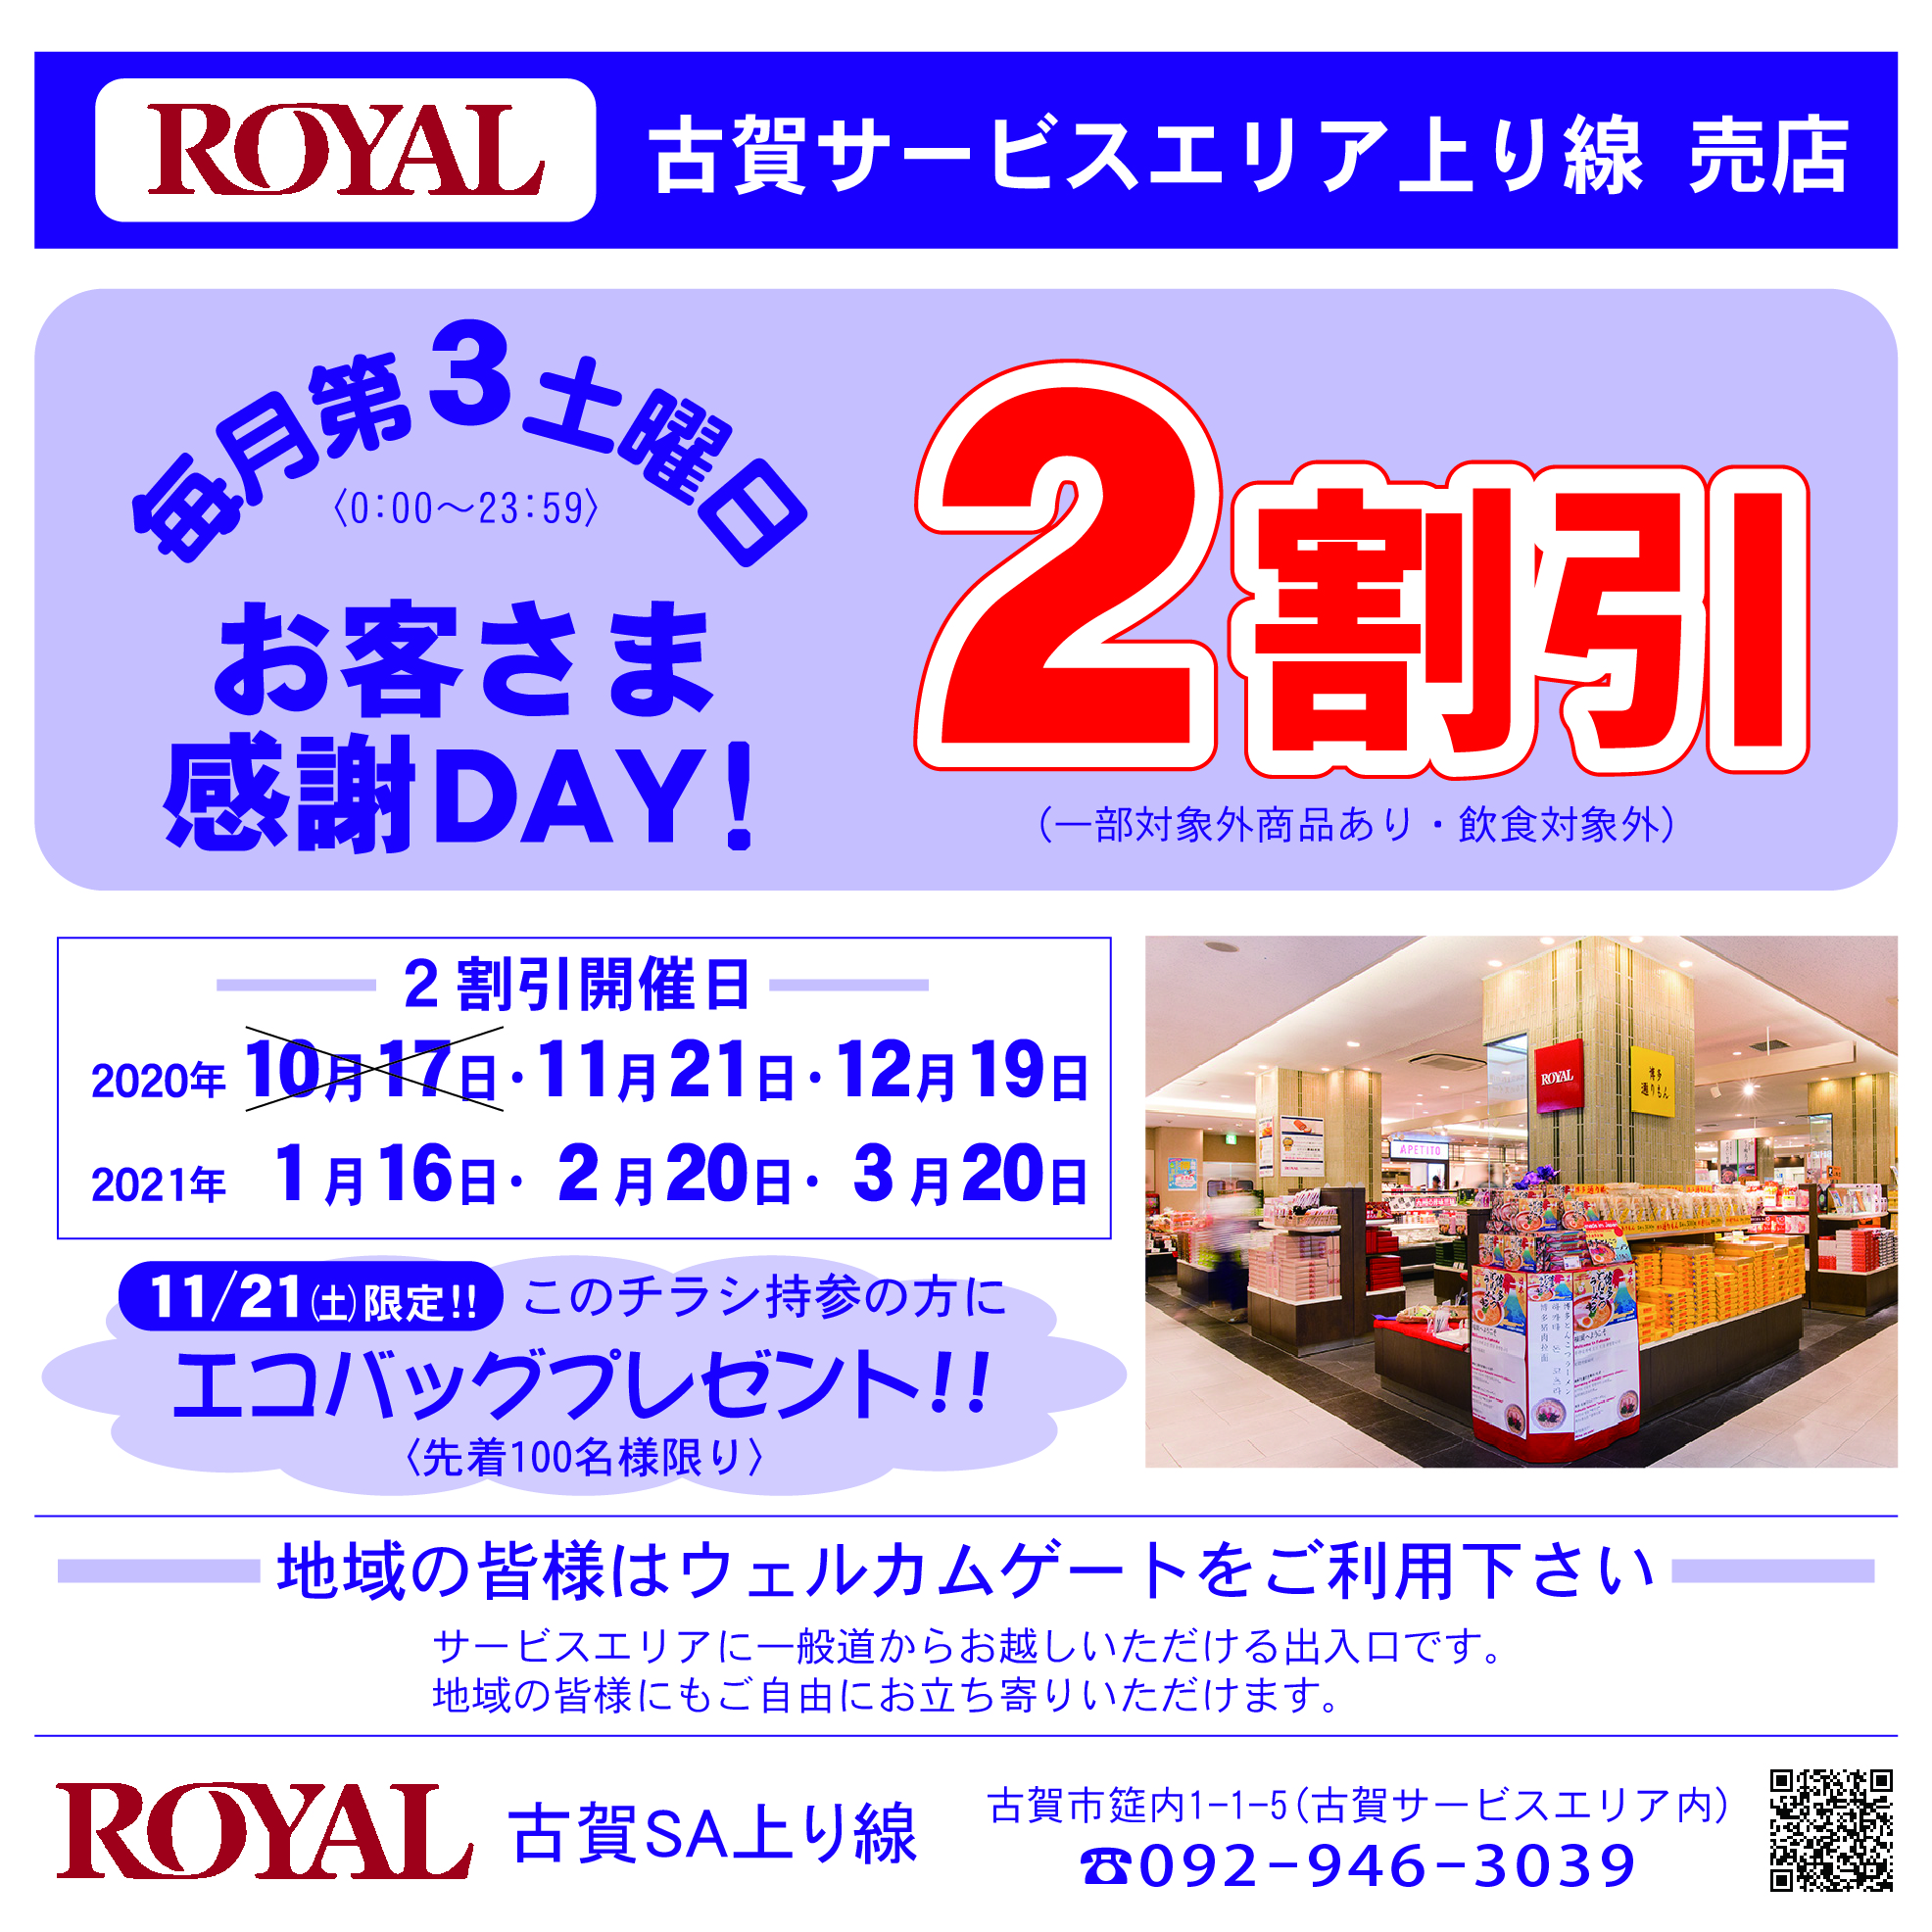 ロイヤル古賀サービスエリア店11-15